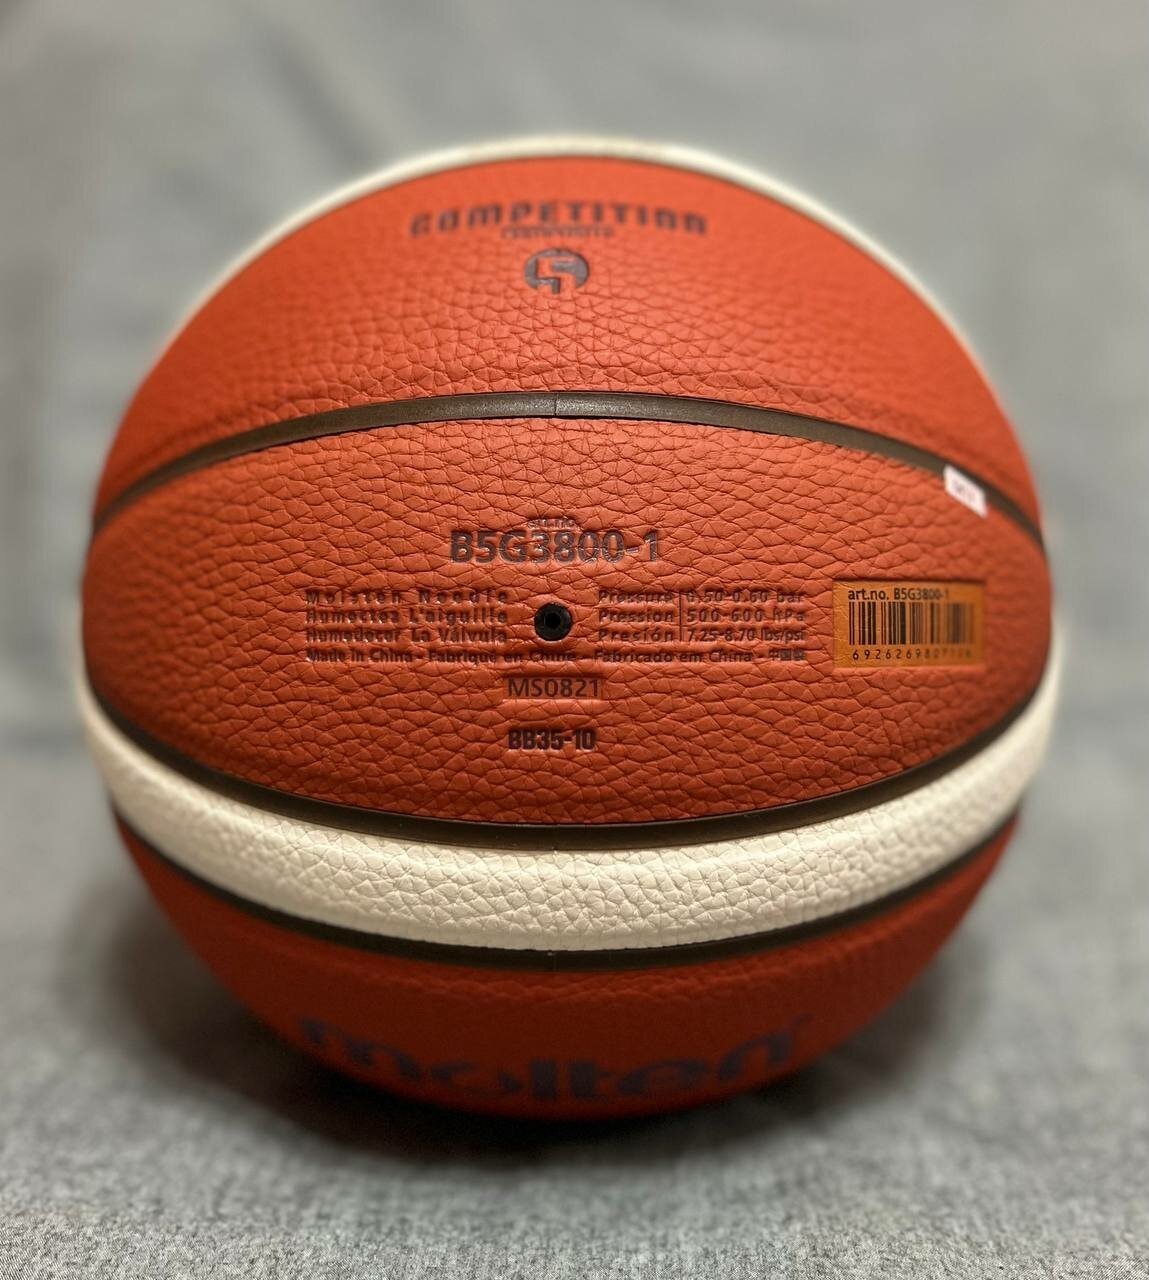 Баскетбольный мяч Molten BG3800. Размер 5